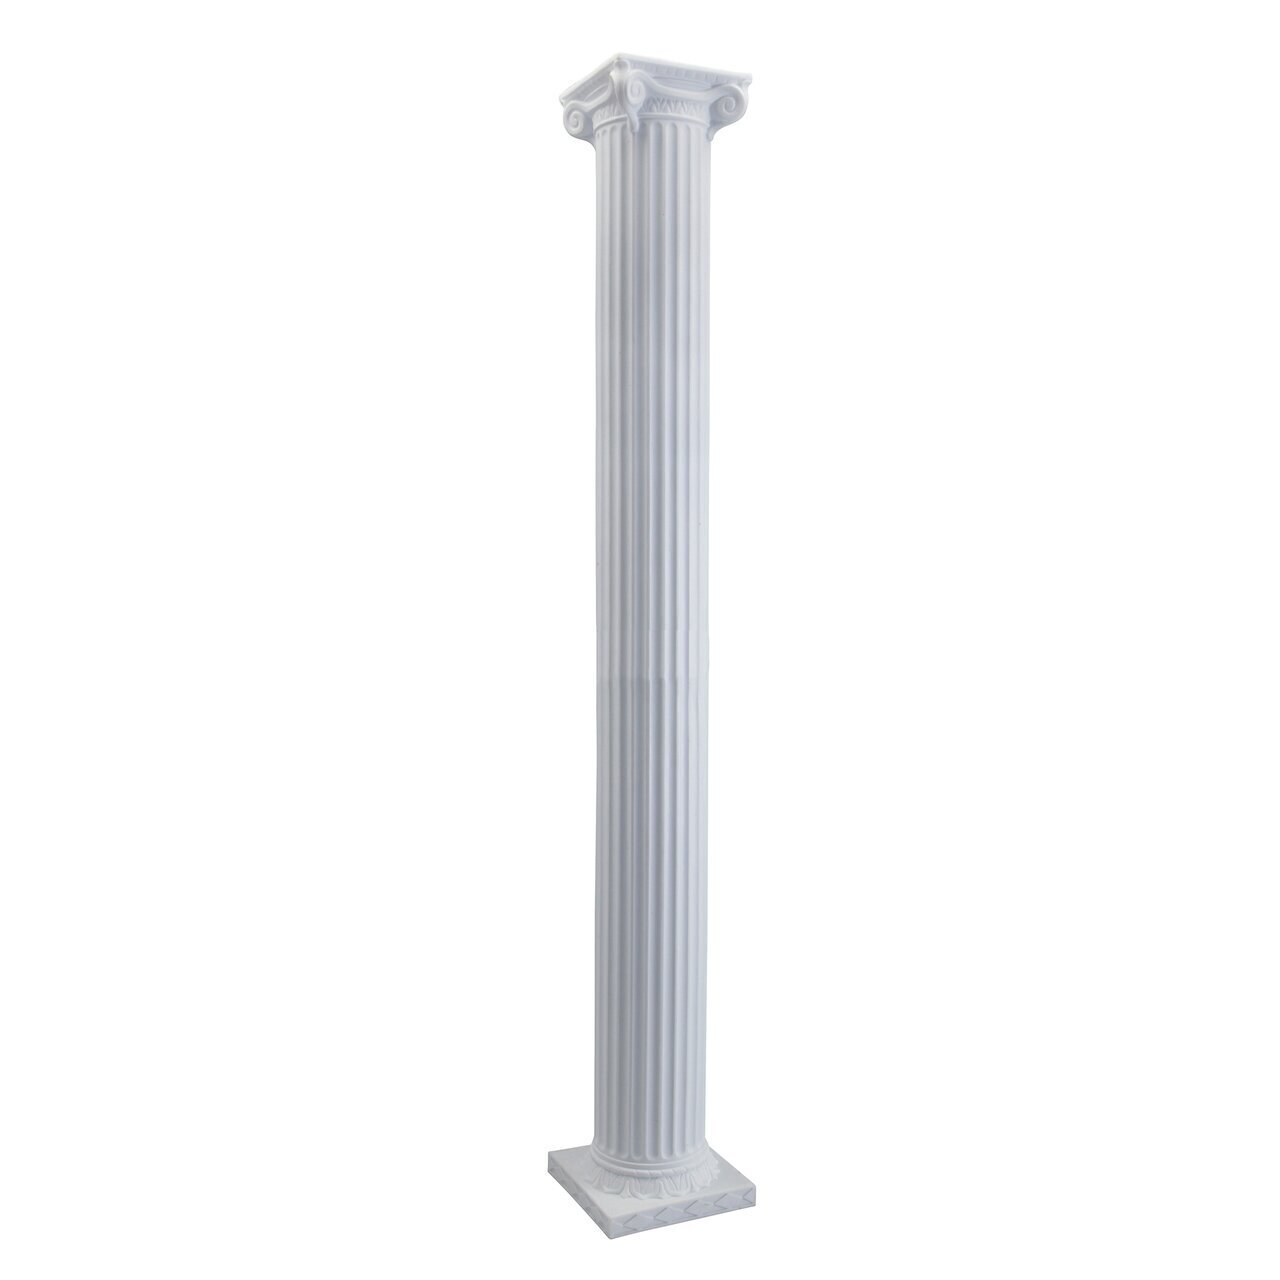 Tall garden column